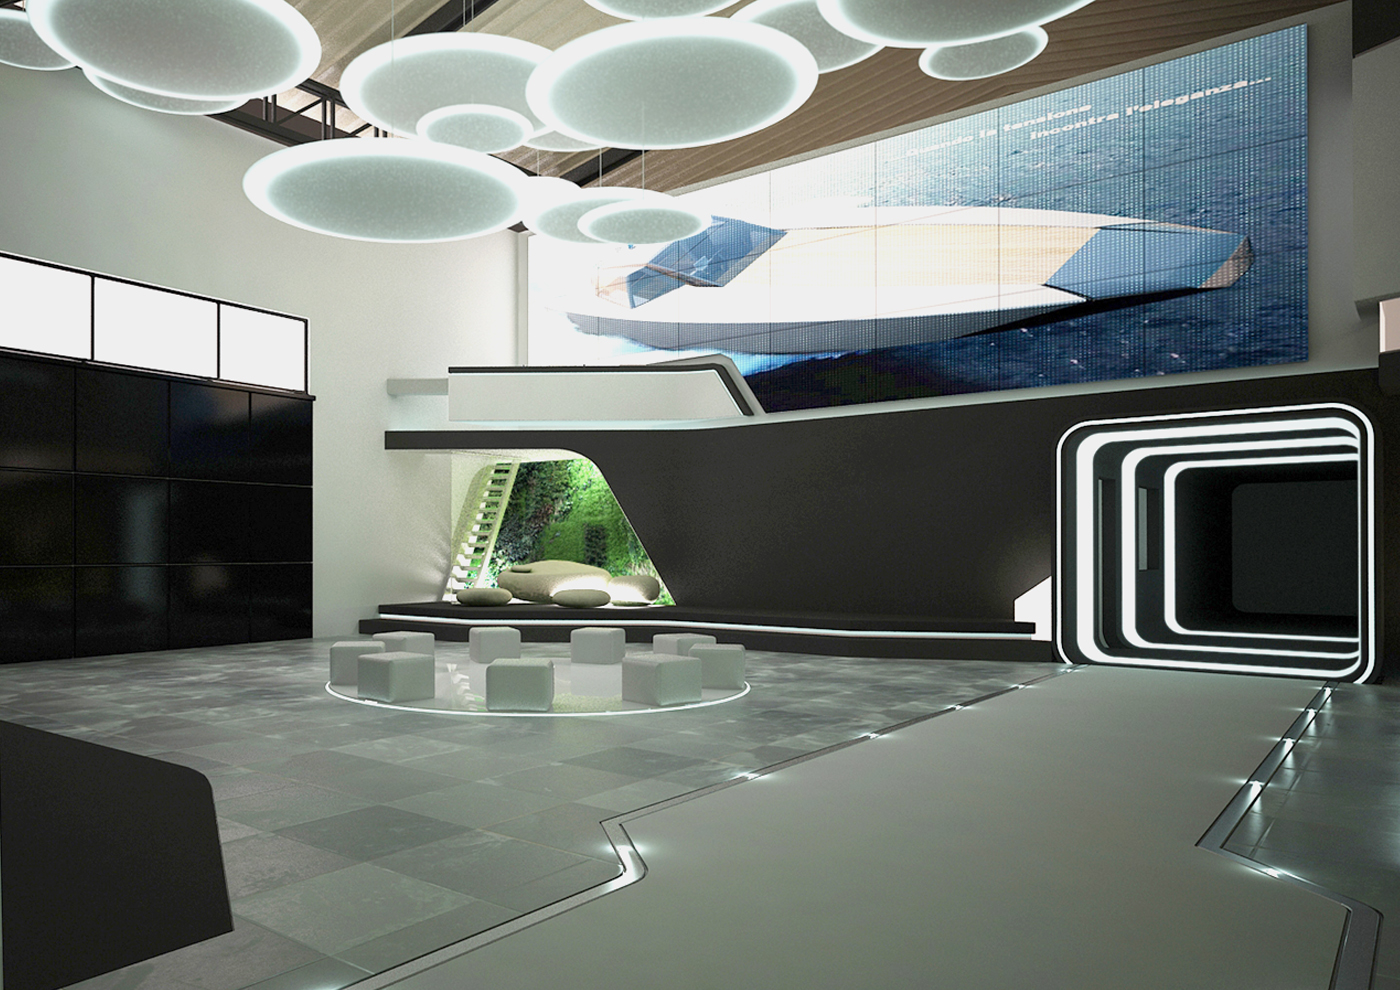 Maggiora automobili - interior design - Industry reassessment - exhibition hall4 - Davide Mezzasalma - Furniture design - Berlin